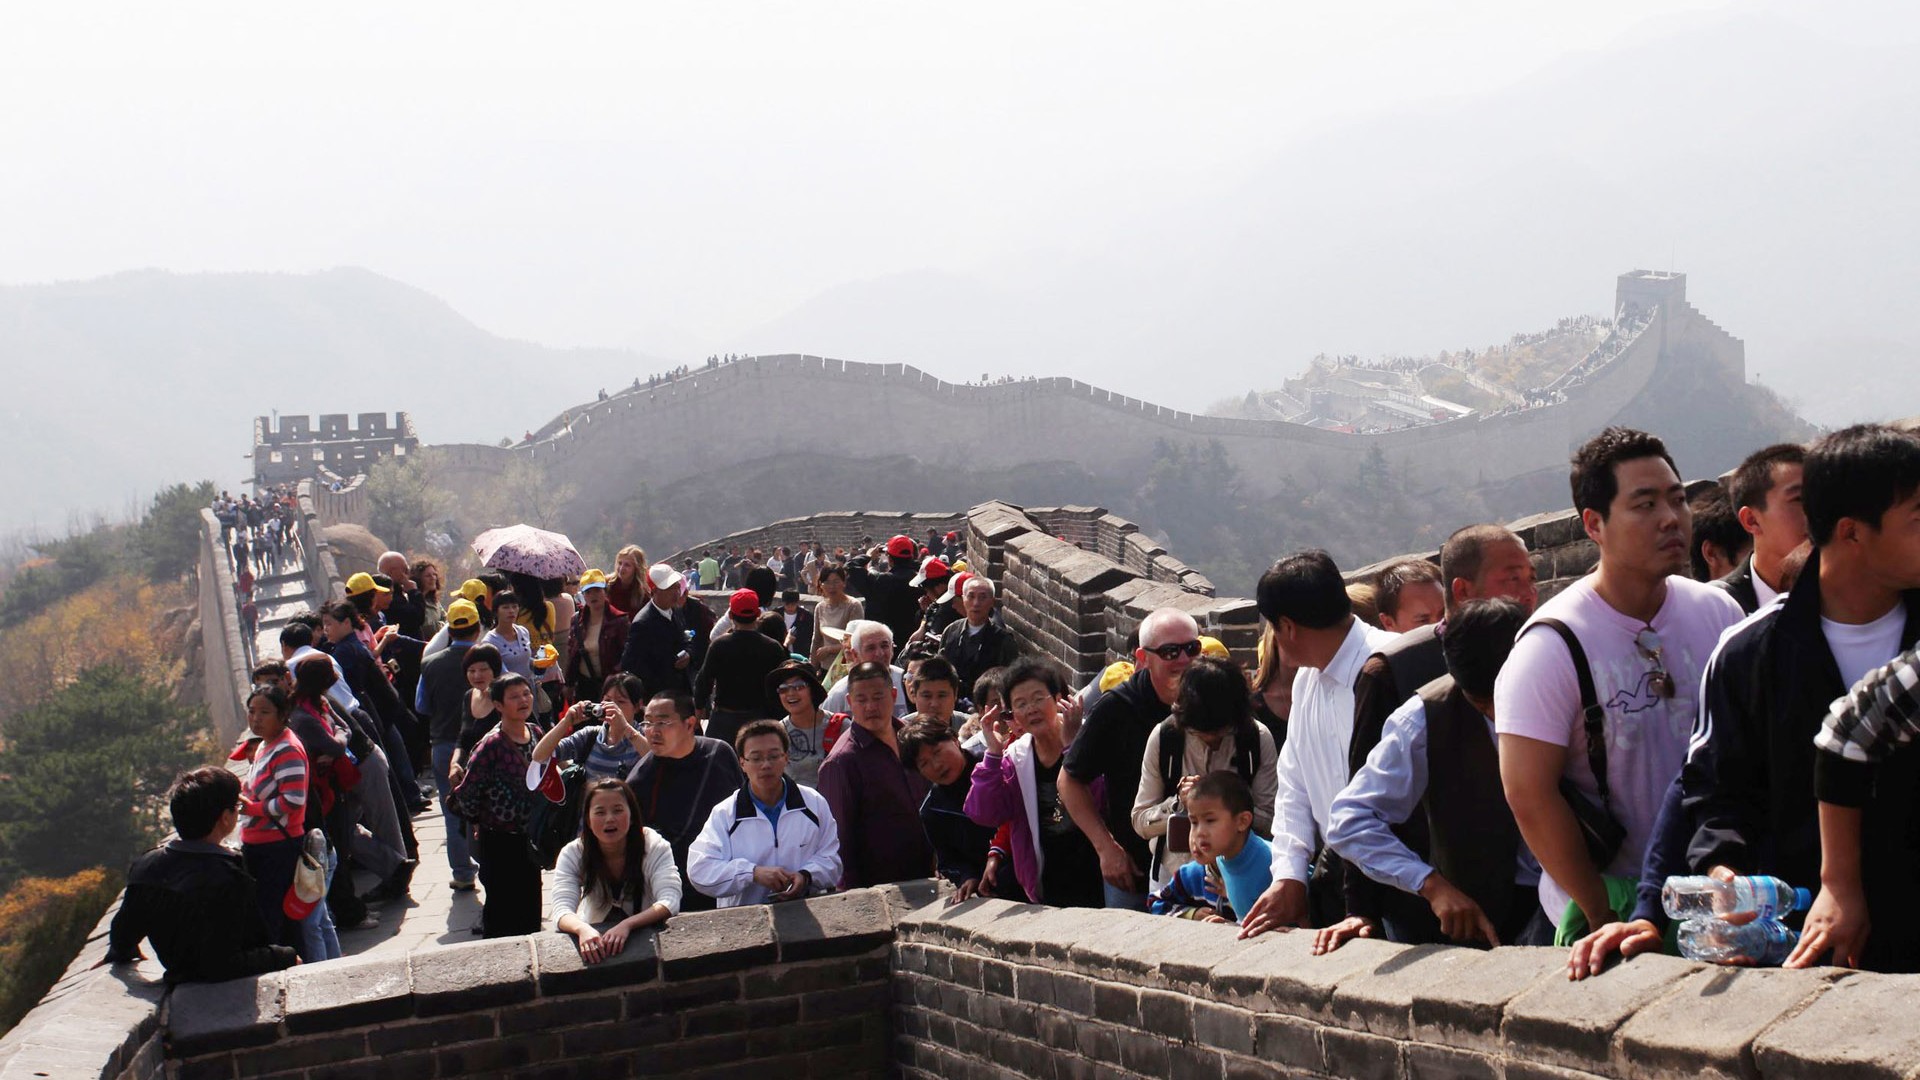 Beijing Tour - Badaling Great Wall (ggc works) #2 - 1920x1080